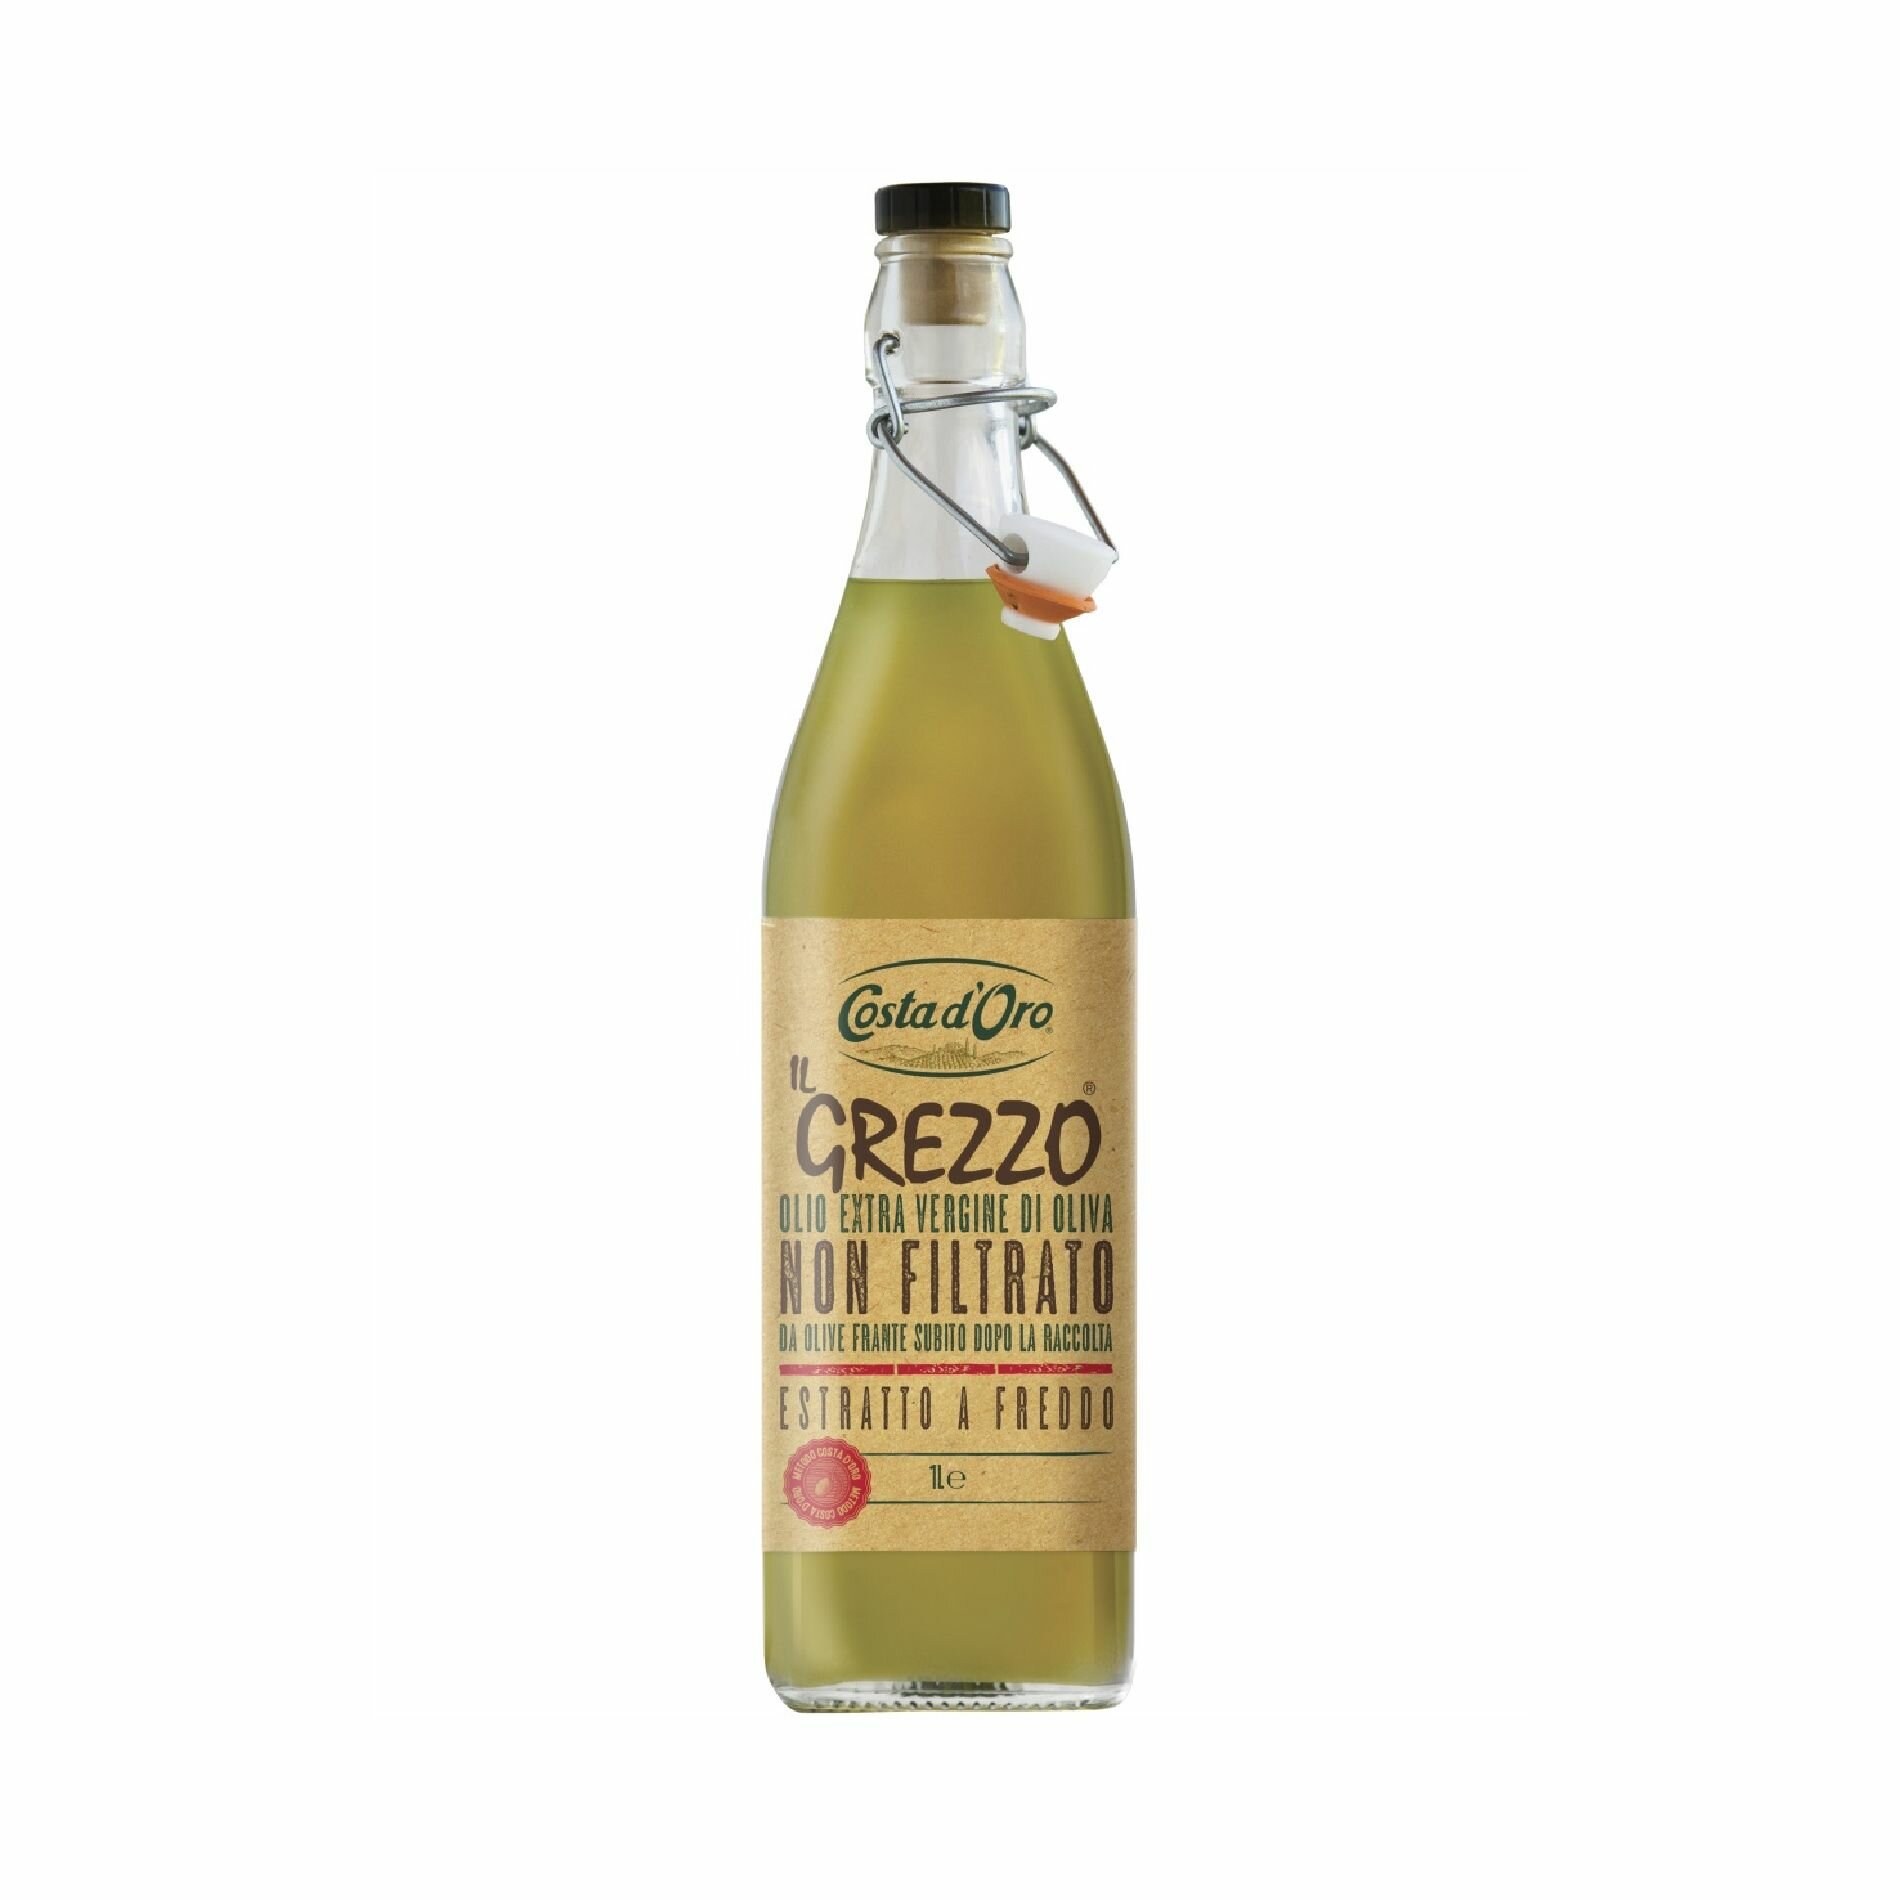 Масло оливковое COSTA D'ORO нерафинированное нефильтрованное высшего качества Экстраверджине Il Grezzo 0,5 л